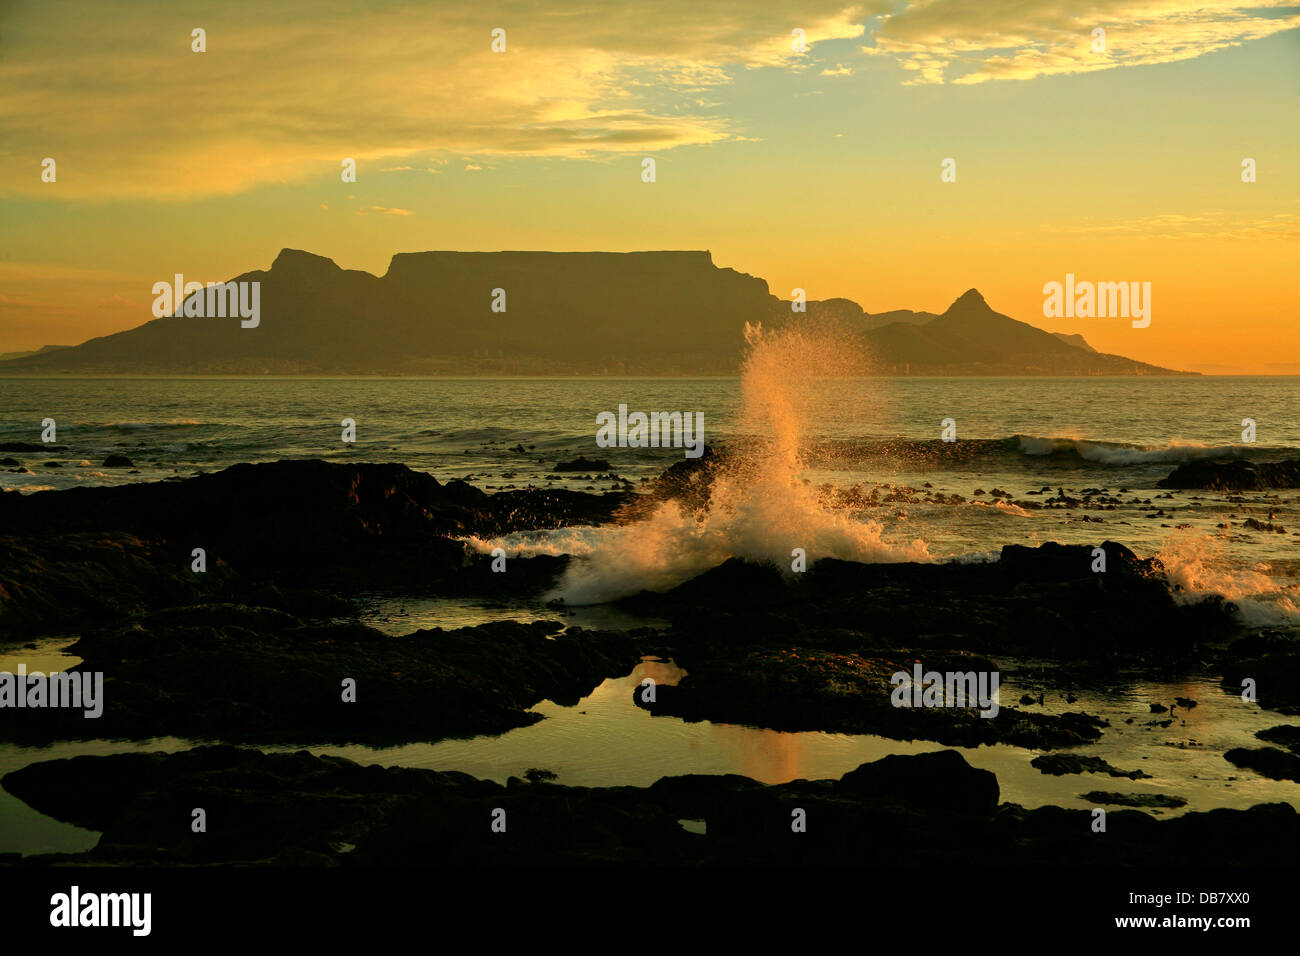 Südafrika - Kapstadt - Tafelberg Tafelbucht Table Mountain Blouberg Sonnenuntergang über Kapstadt Atlantischen Ozean Wellen Stockfoto